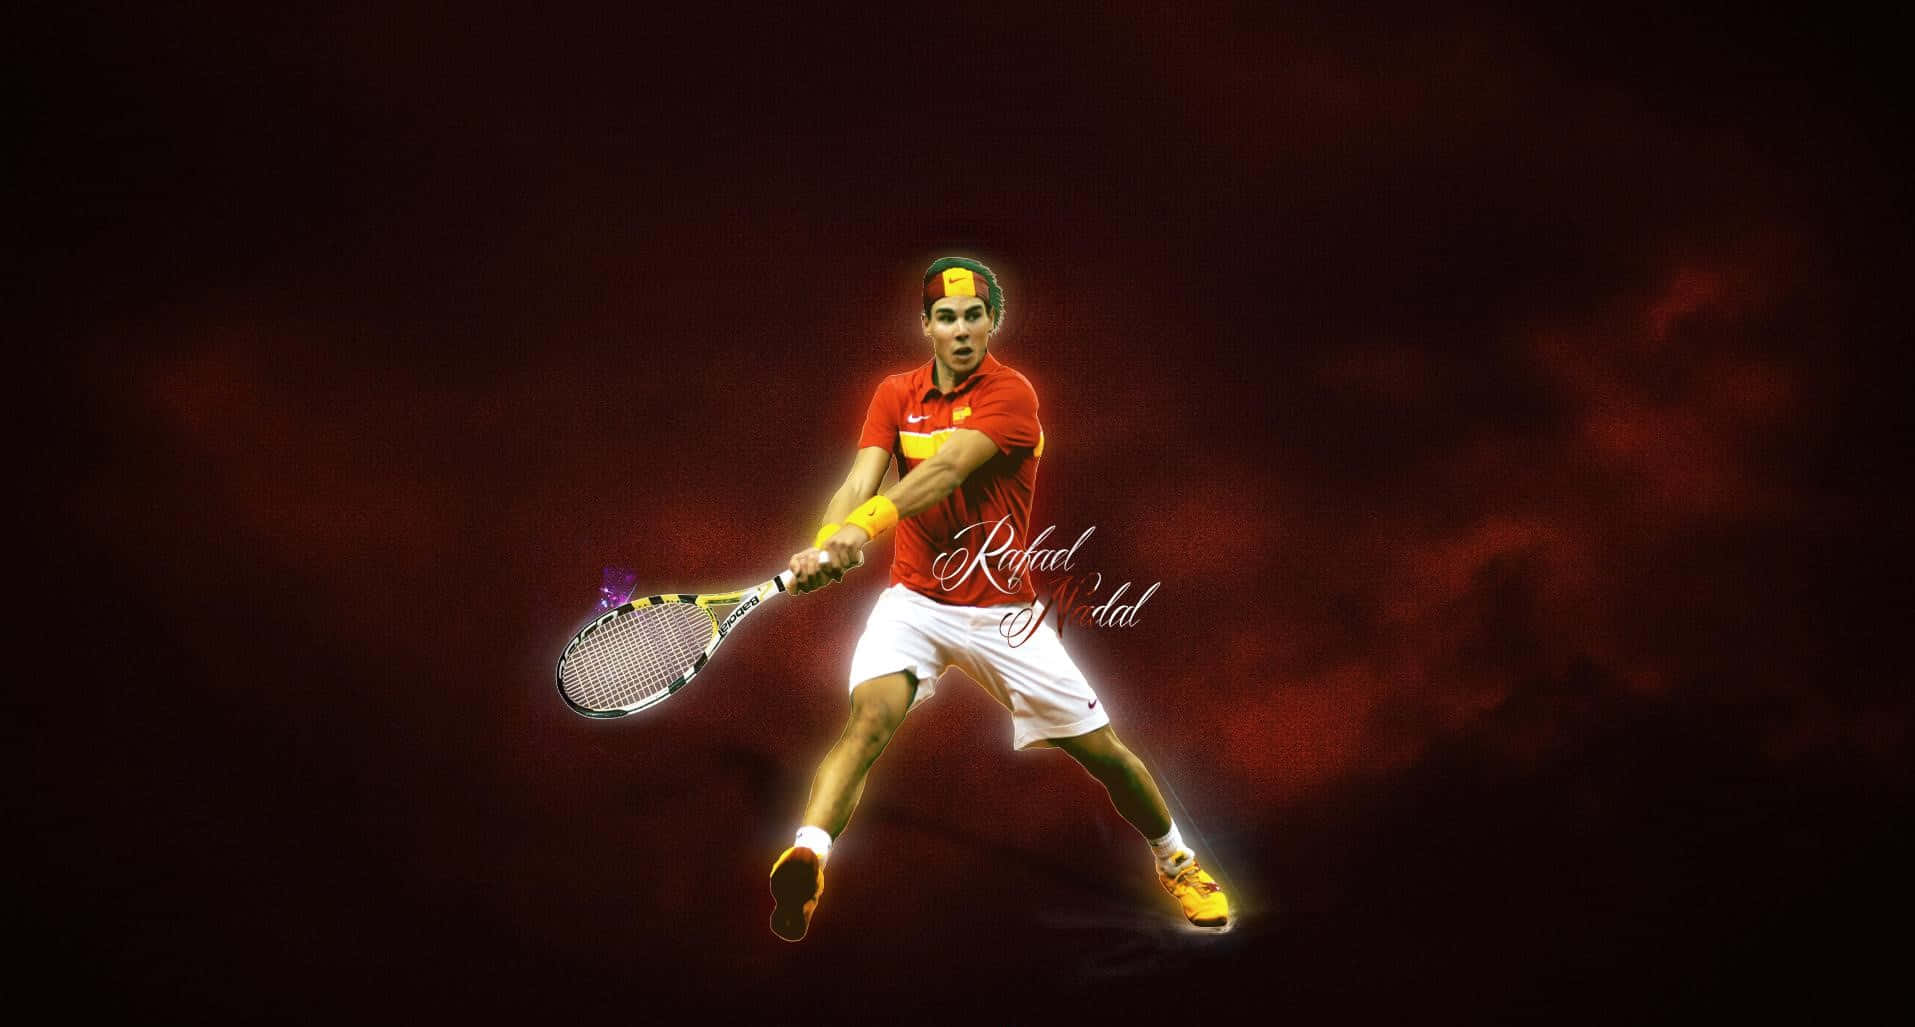 Hdbakgrundsbild Av Spanska Tennisspelaren Rafael Nadal.